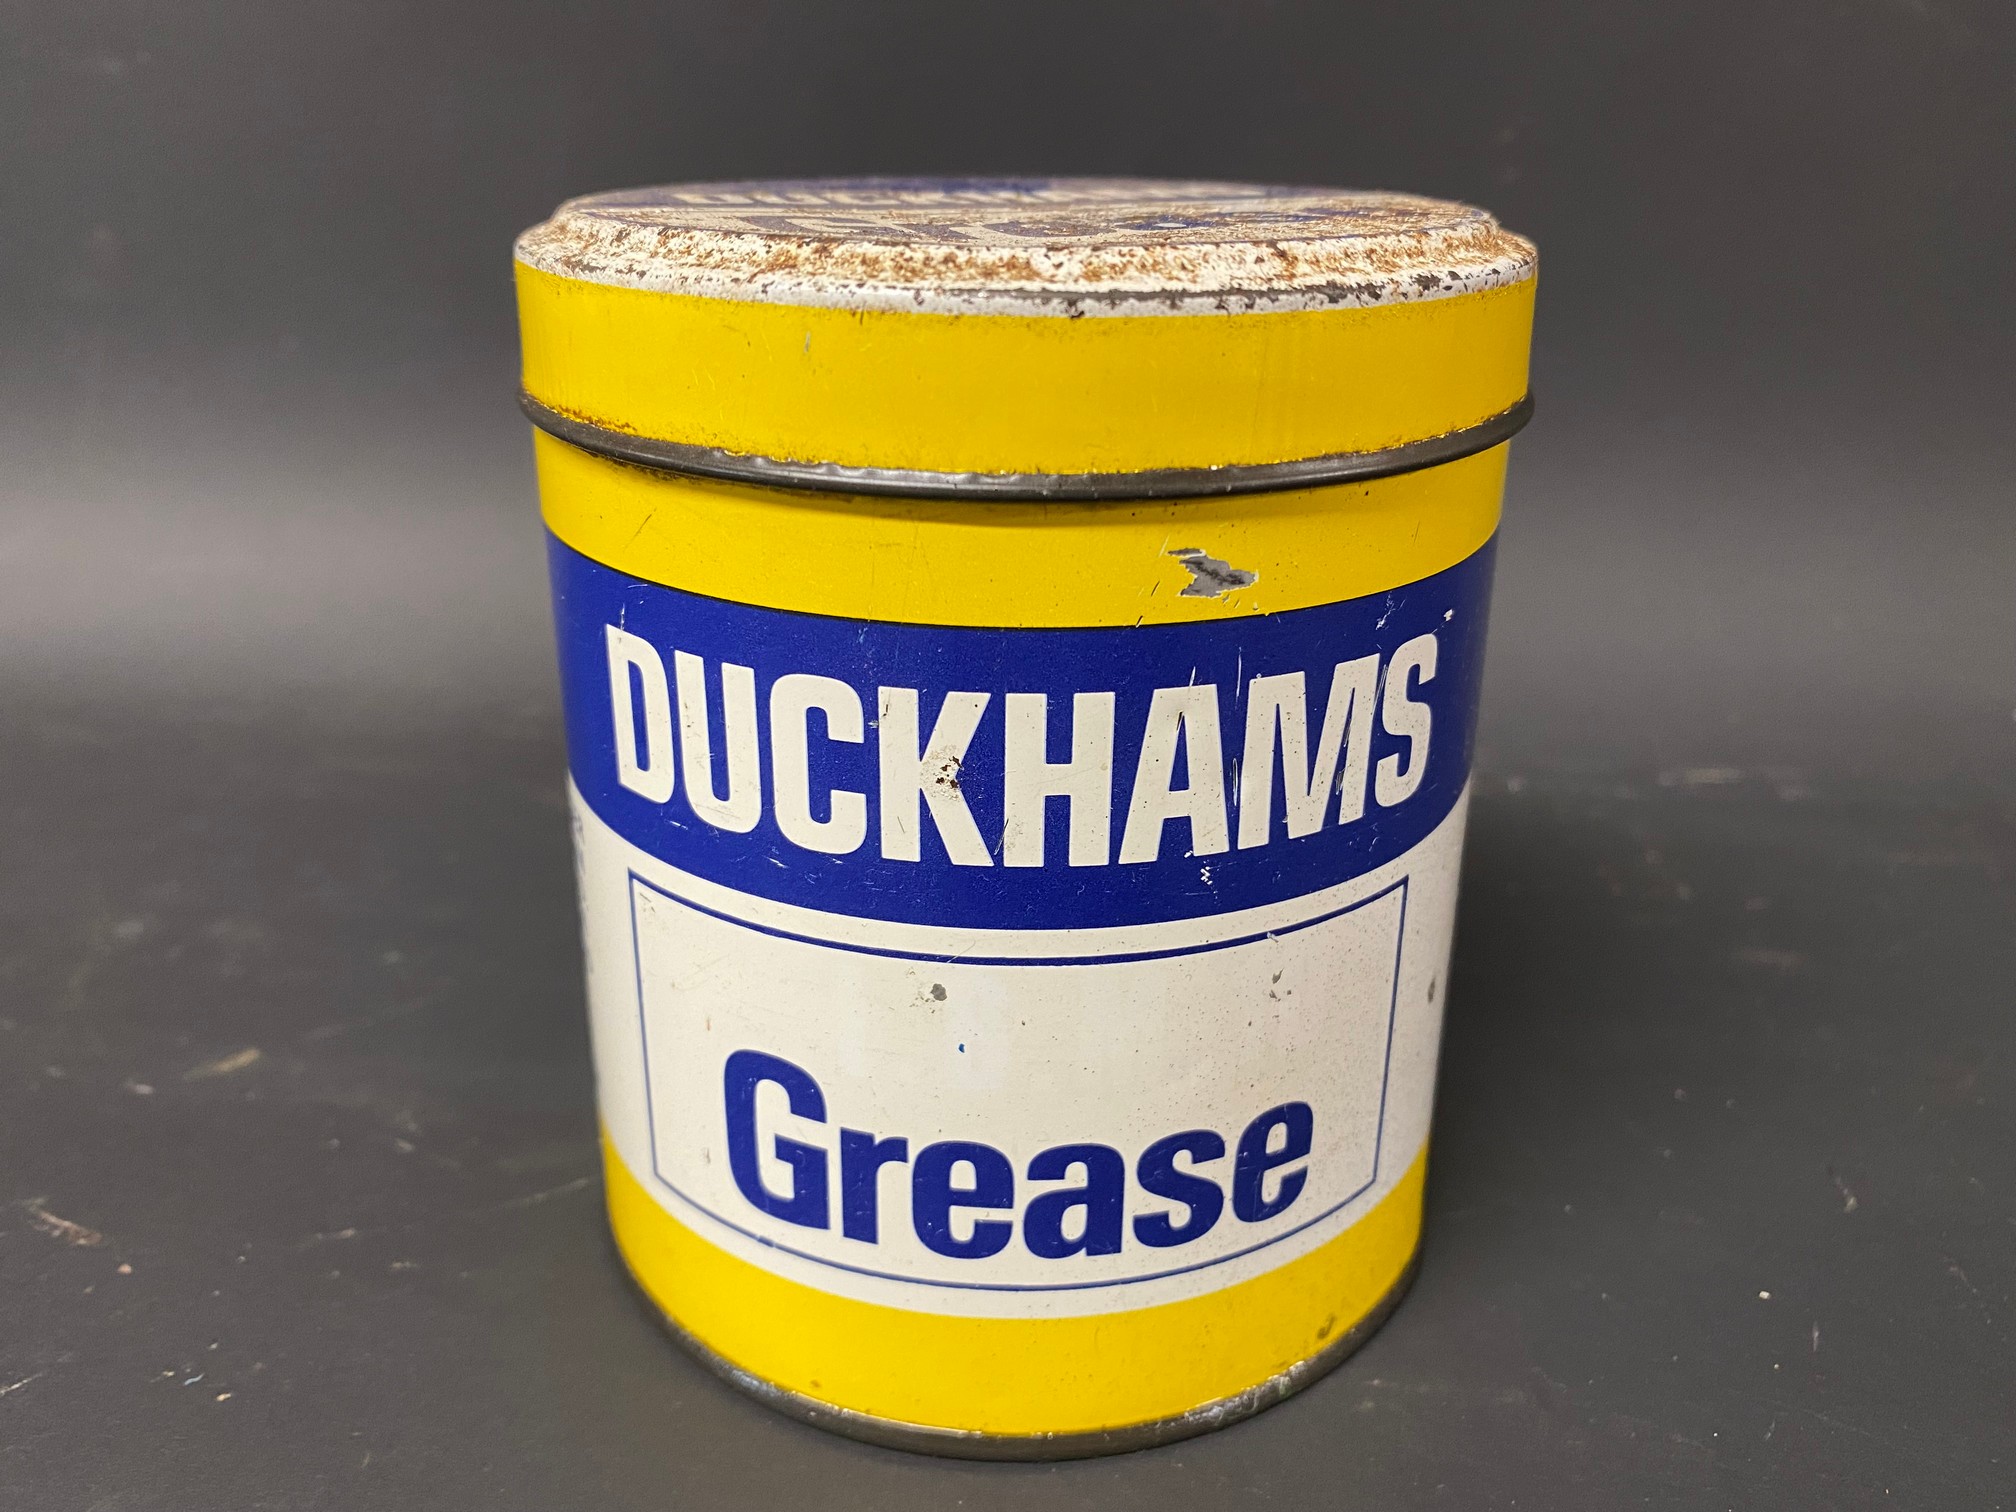 A Duckhams Grease tin.